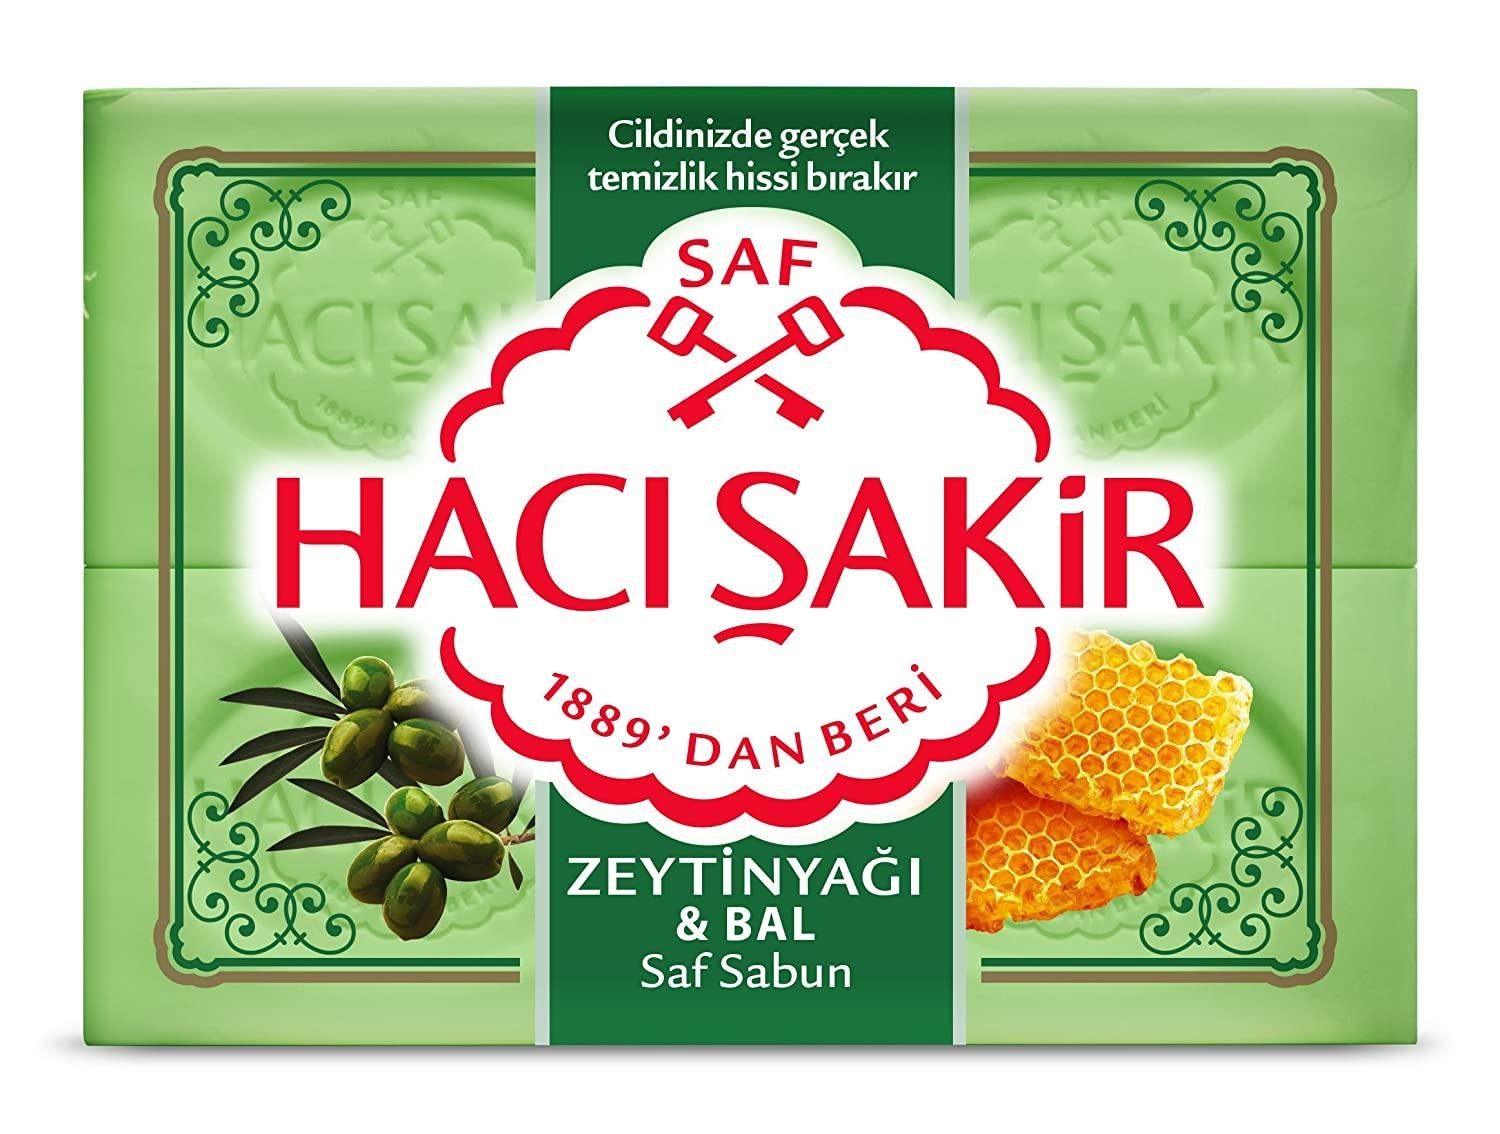 Haci Sakir Handseife Haci Sakir Seife Olivenöl & Honig - Zeytinyag ve Bali Sabun (4x150g)